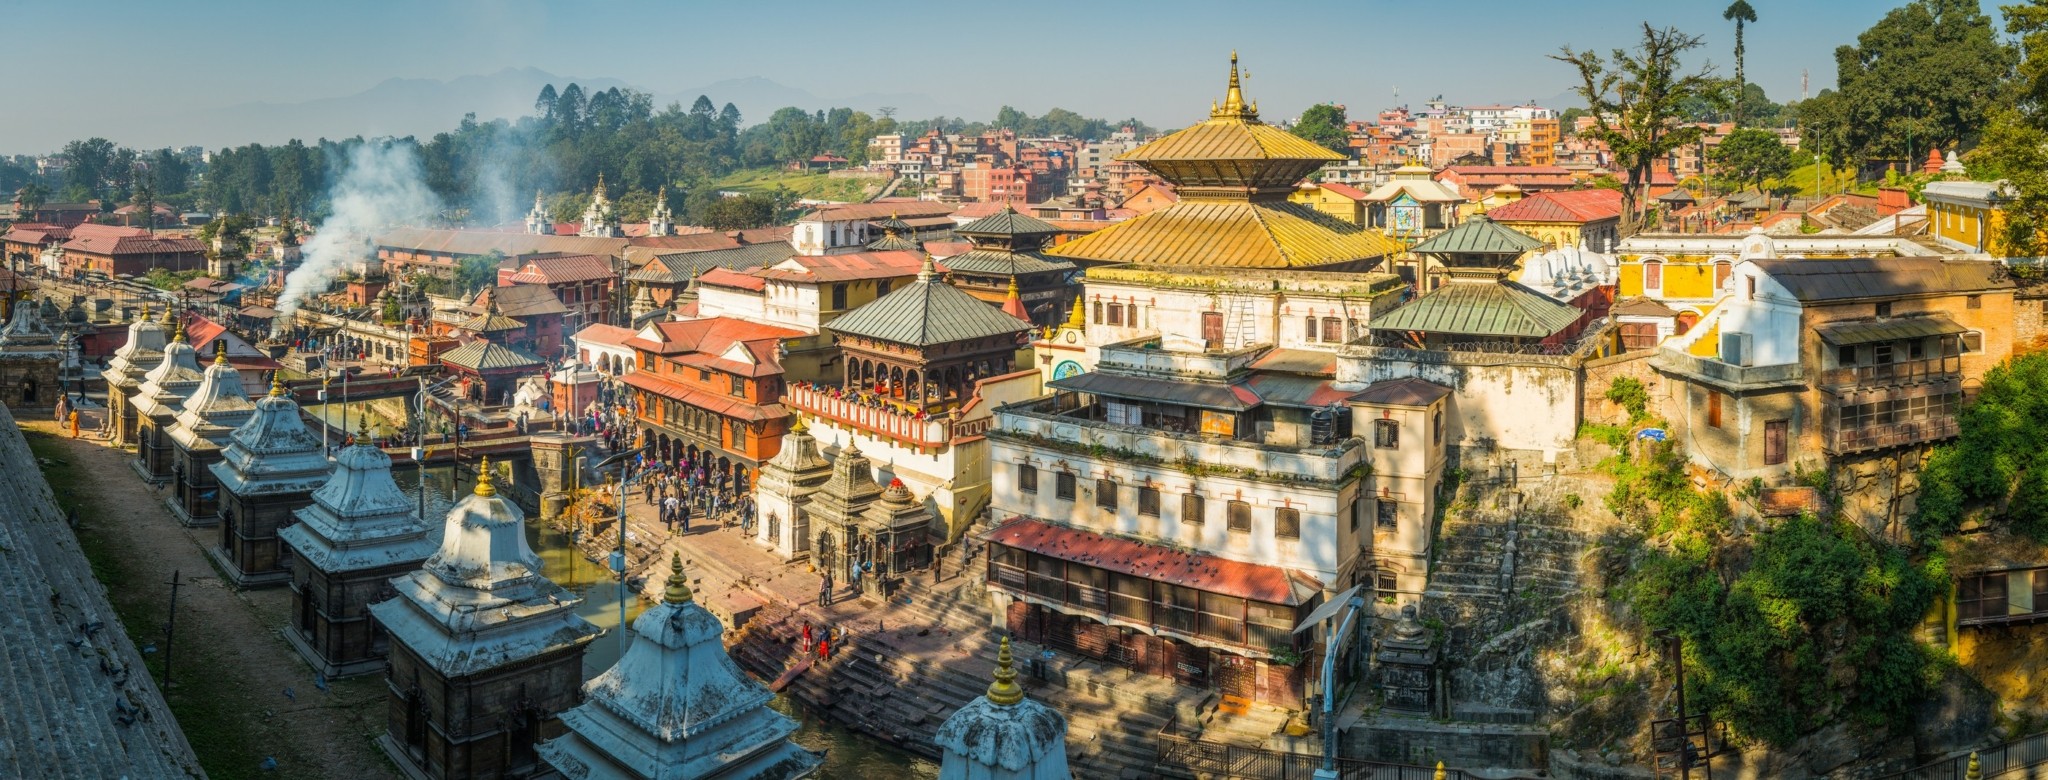 Νεπάλ: Μια μυστικιστική εμπειρία ζωής στο Ορεινό Βασίλειο του Εβερεστ